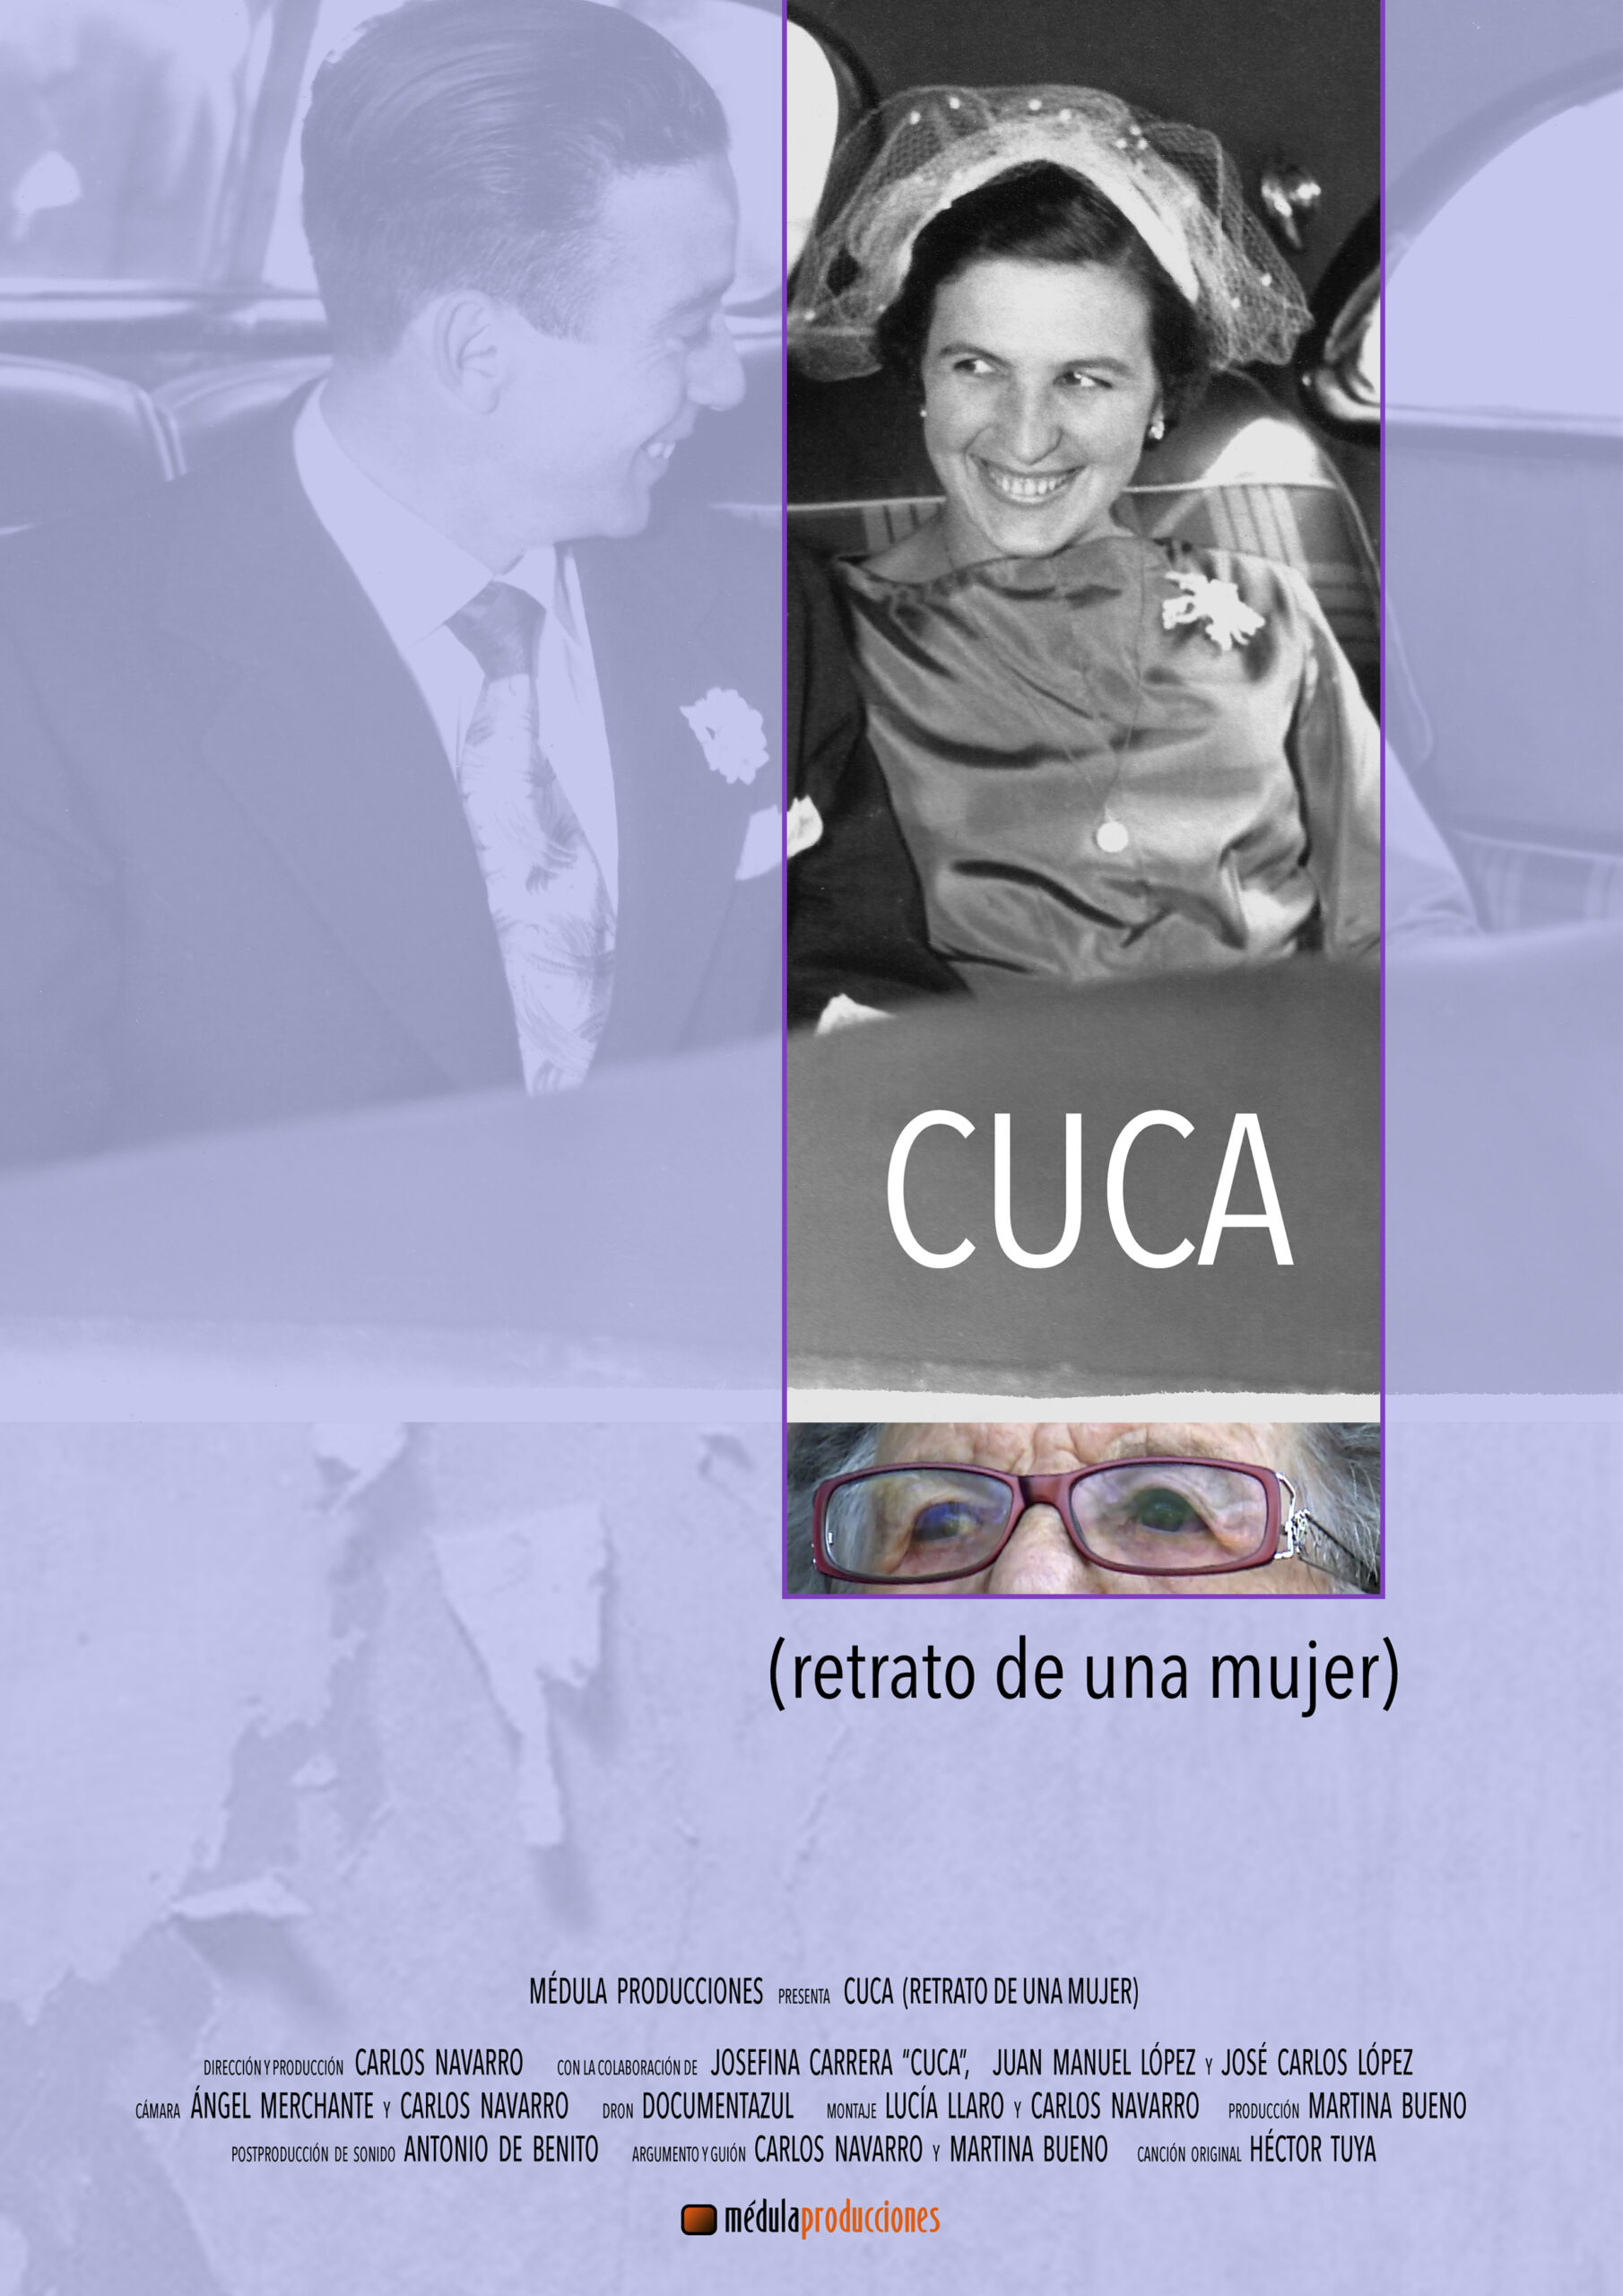 CUCA, RETRATO DE UNA MUJER (2019)